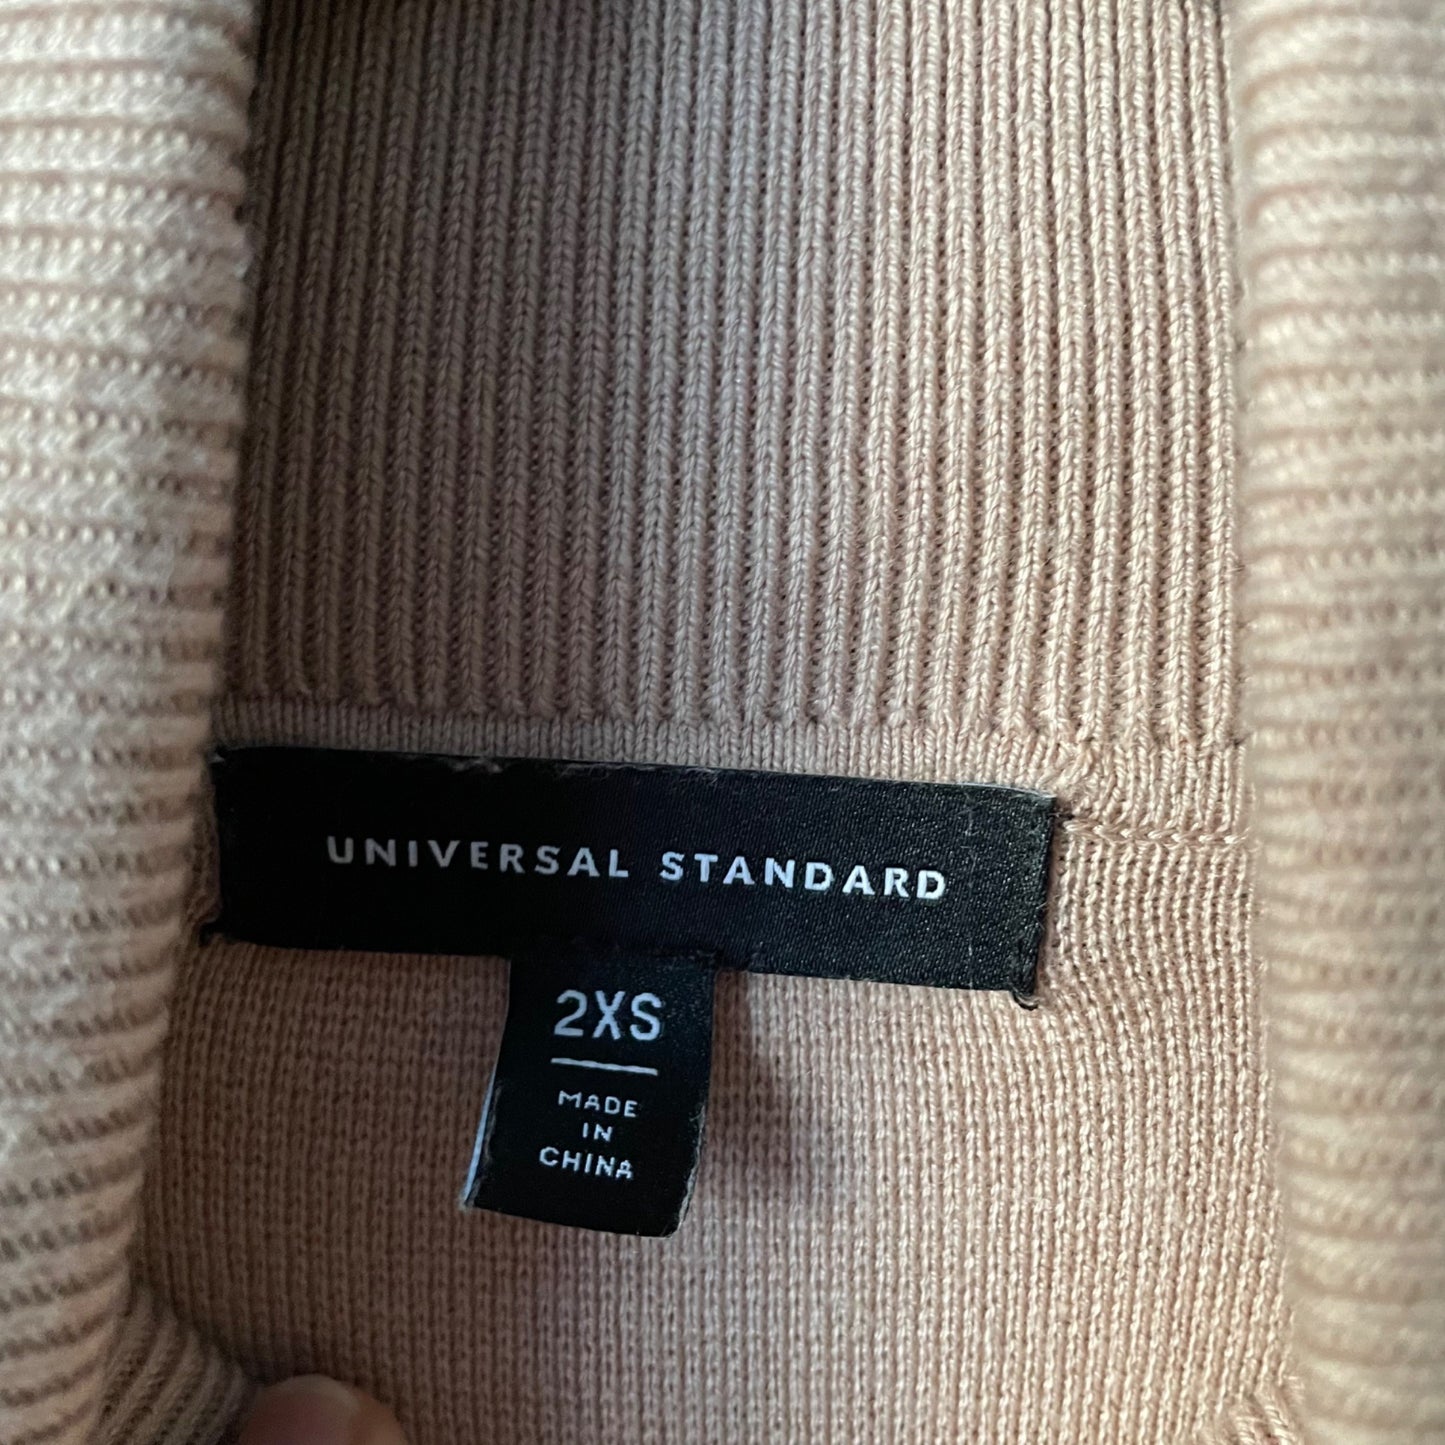 Universal Standard Beige Milano Stitch Turtleneck Sweater Women's Size Medium